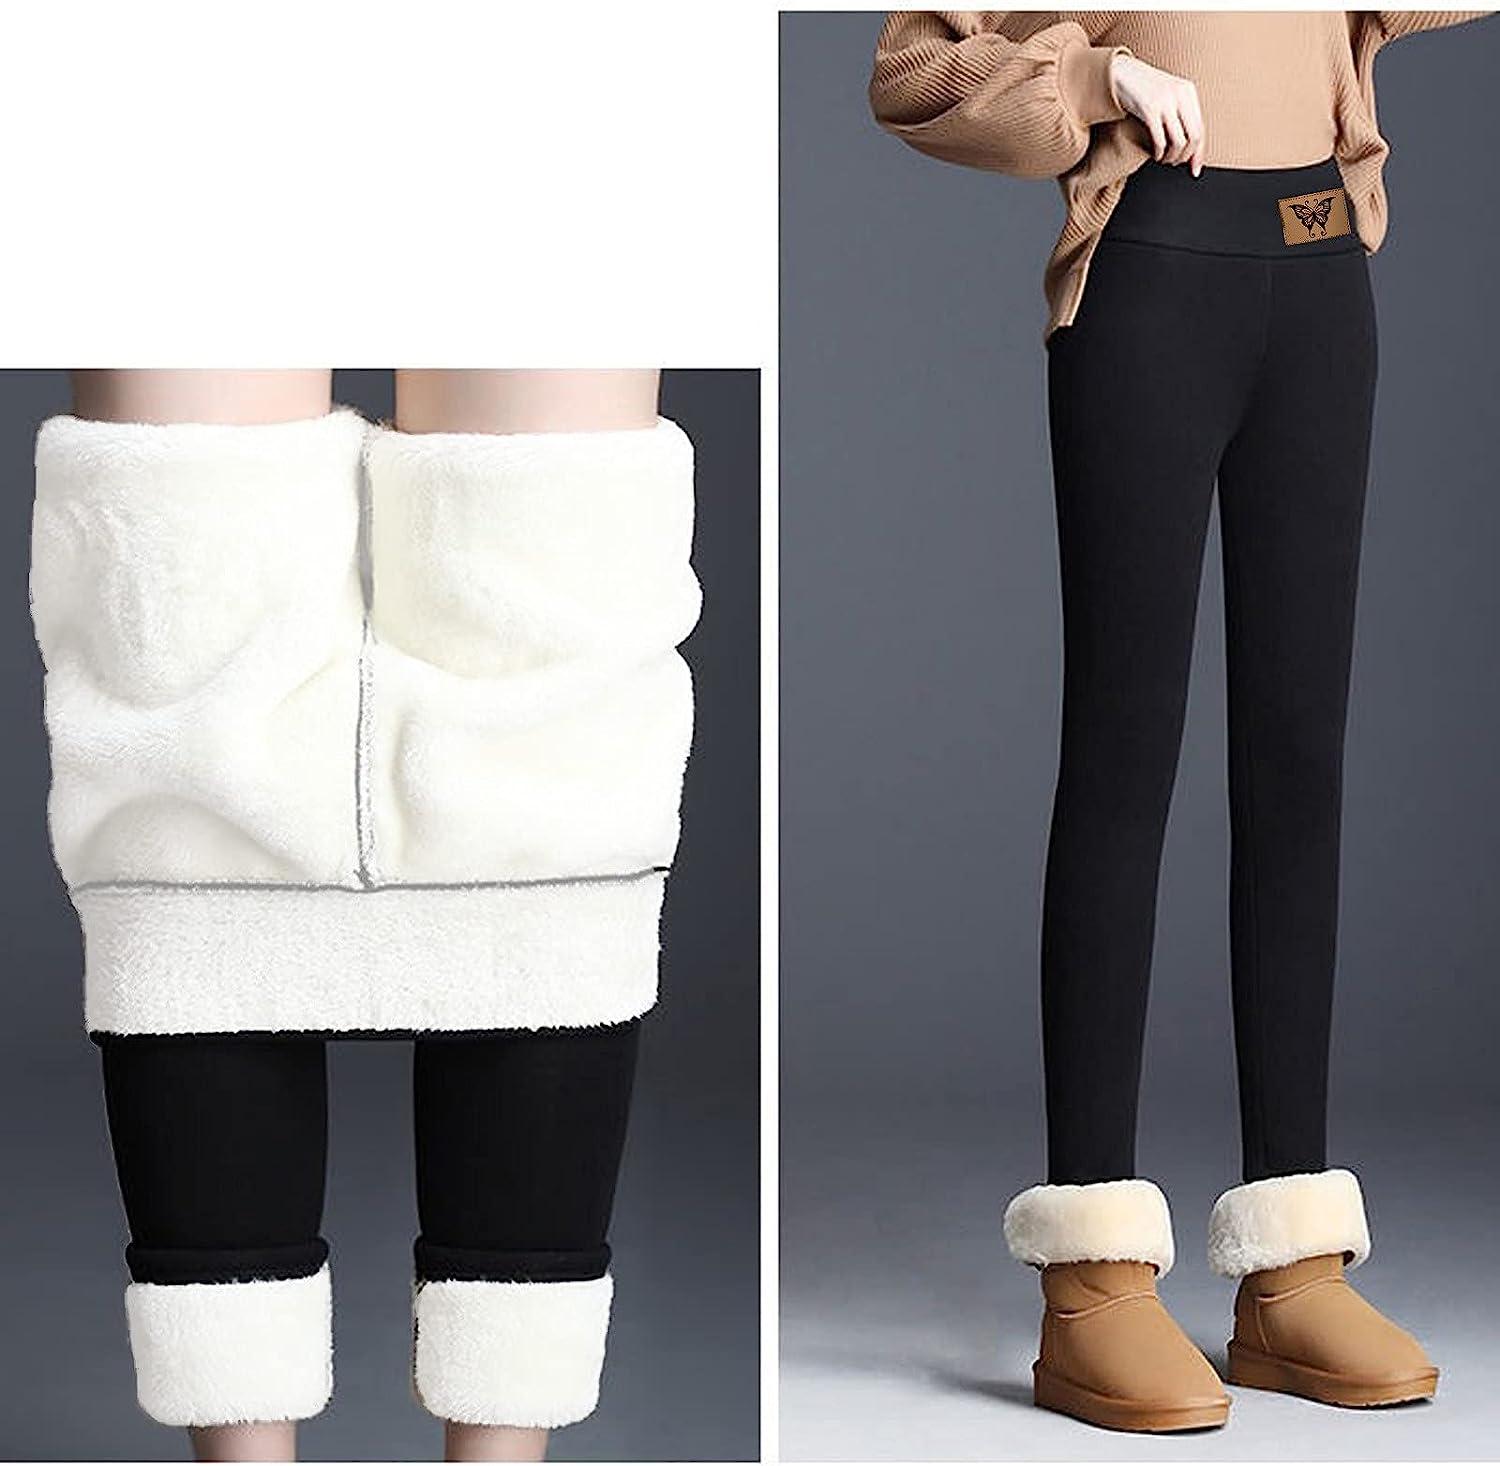 jsaierl Fleece Lined Winter Warm Leggings for Women Girls Thick